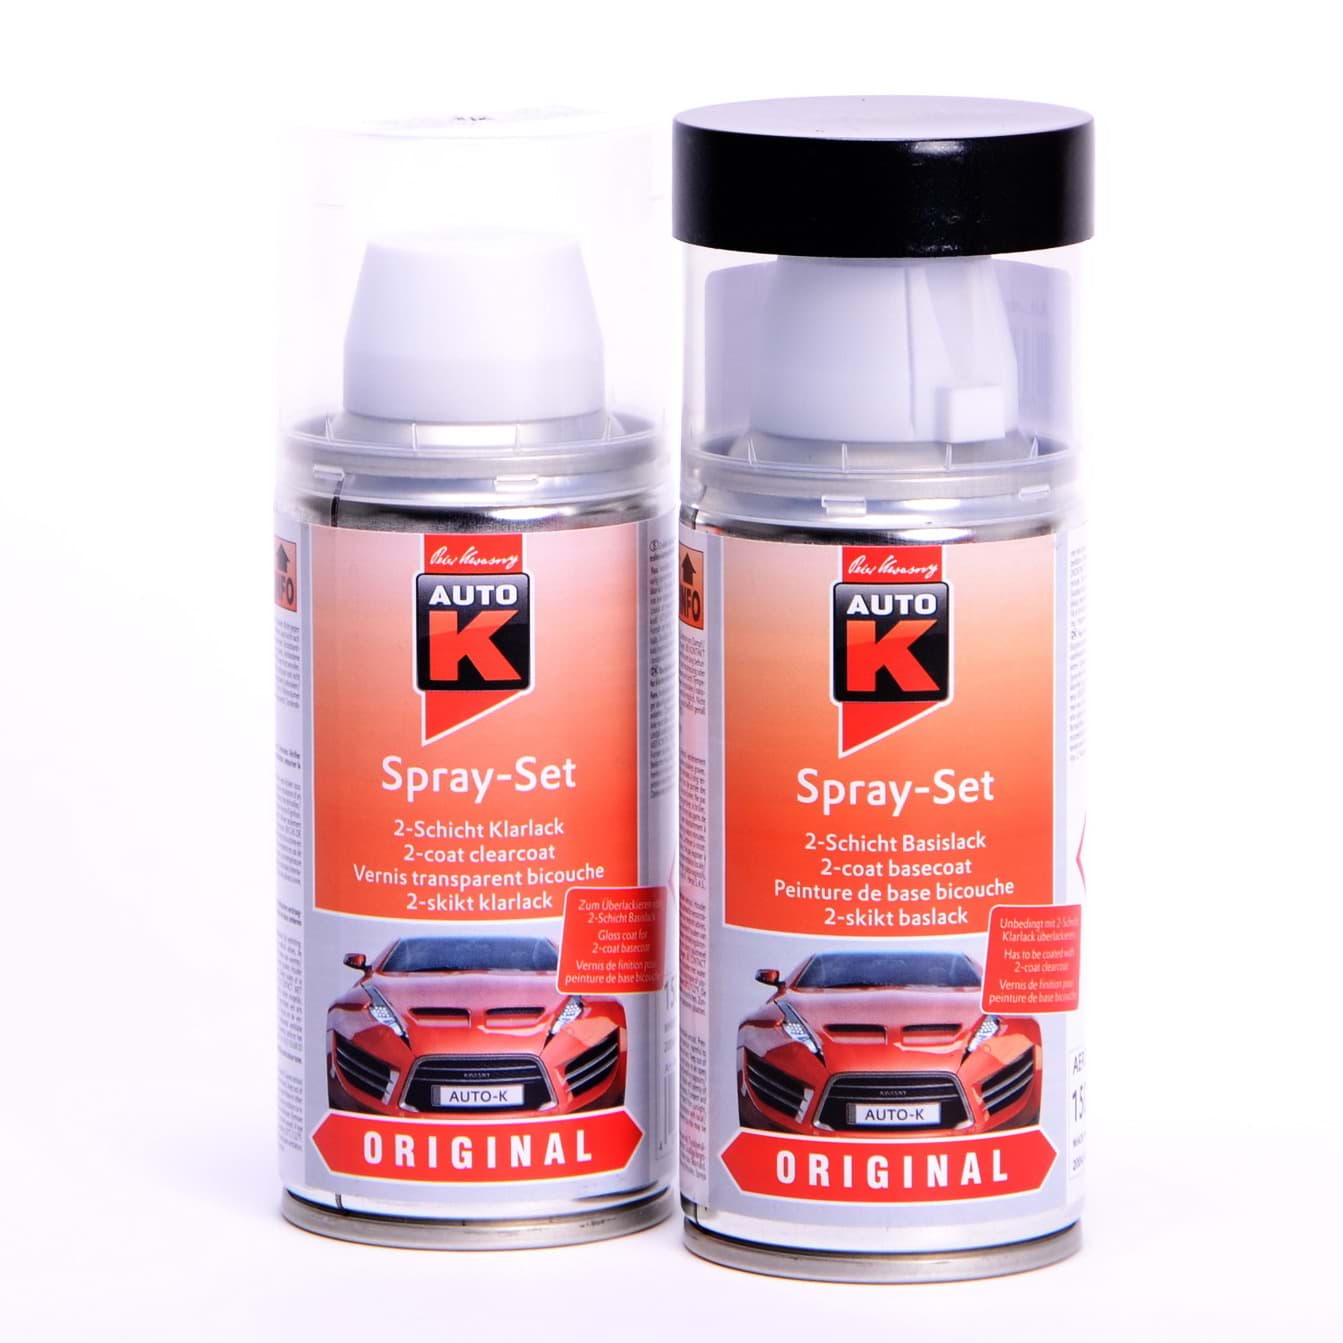 Auto-K Spray-Set Autolack für Opel 140 Rauchgrau met 21375 resmi